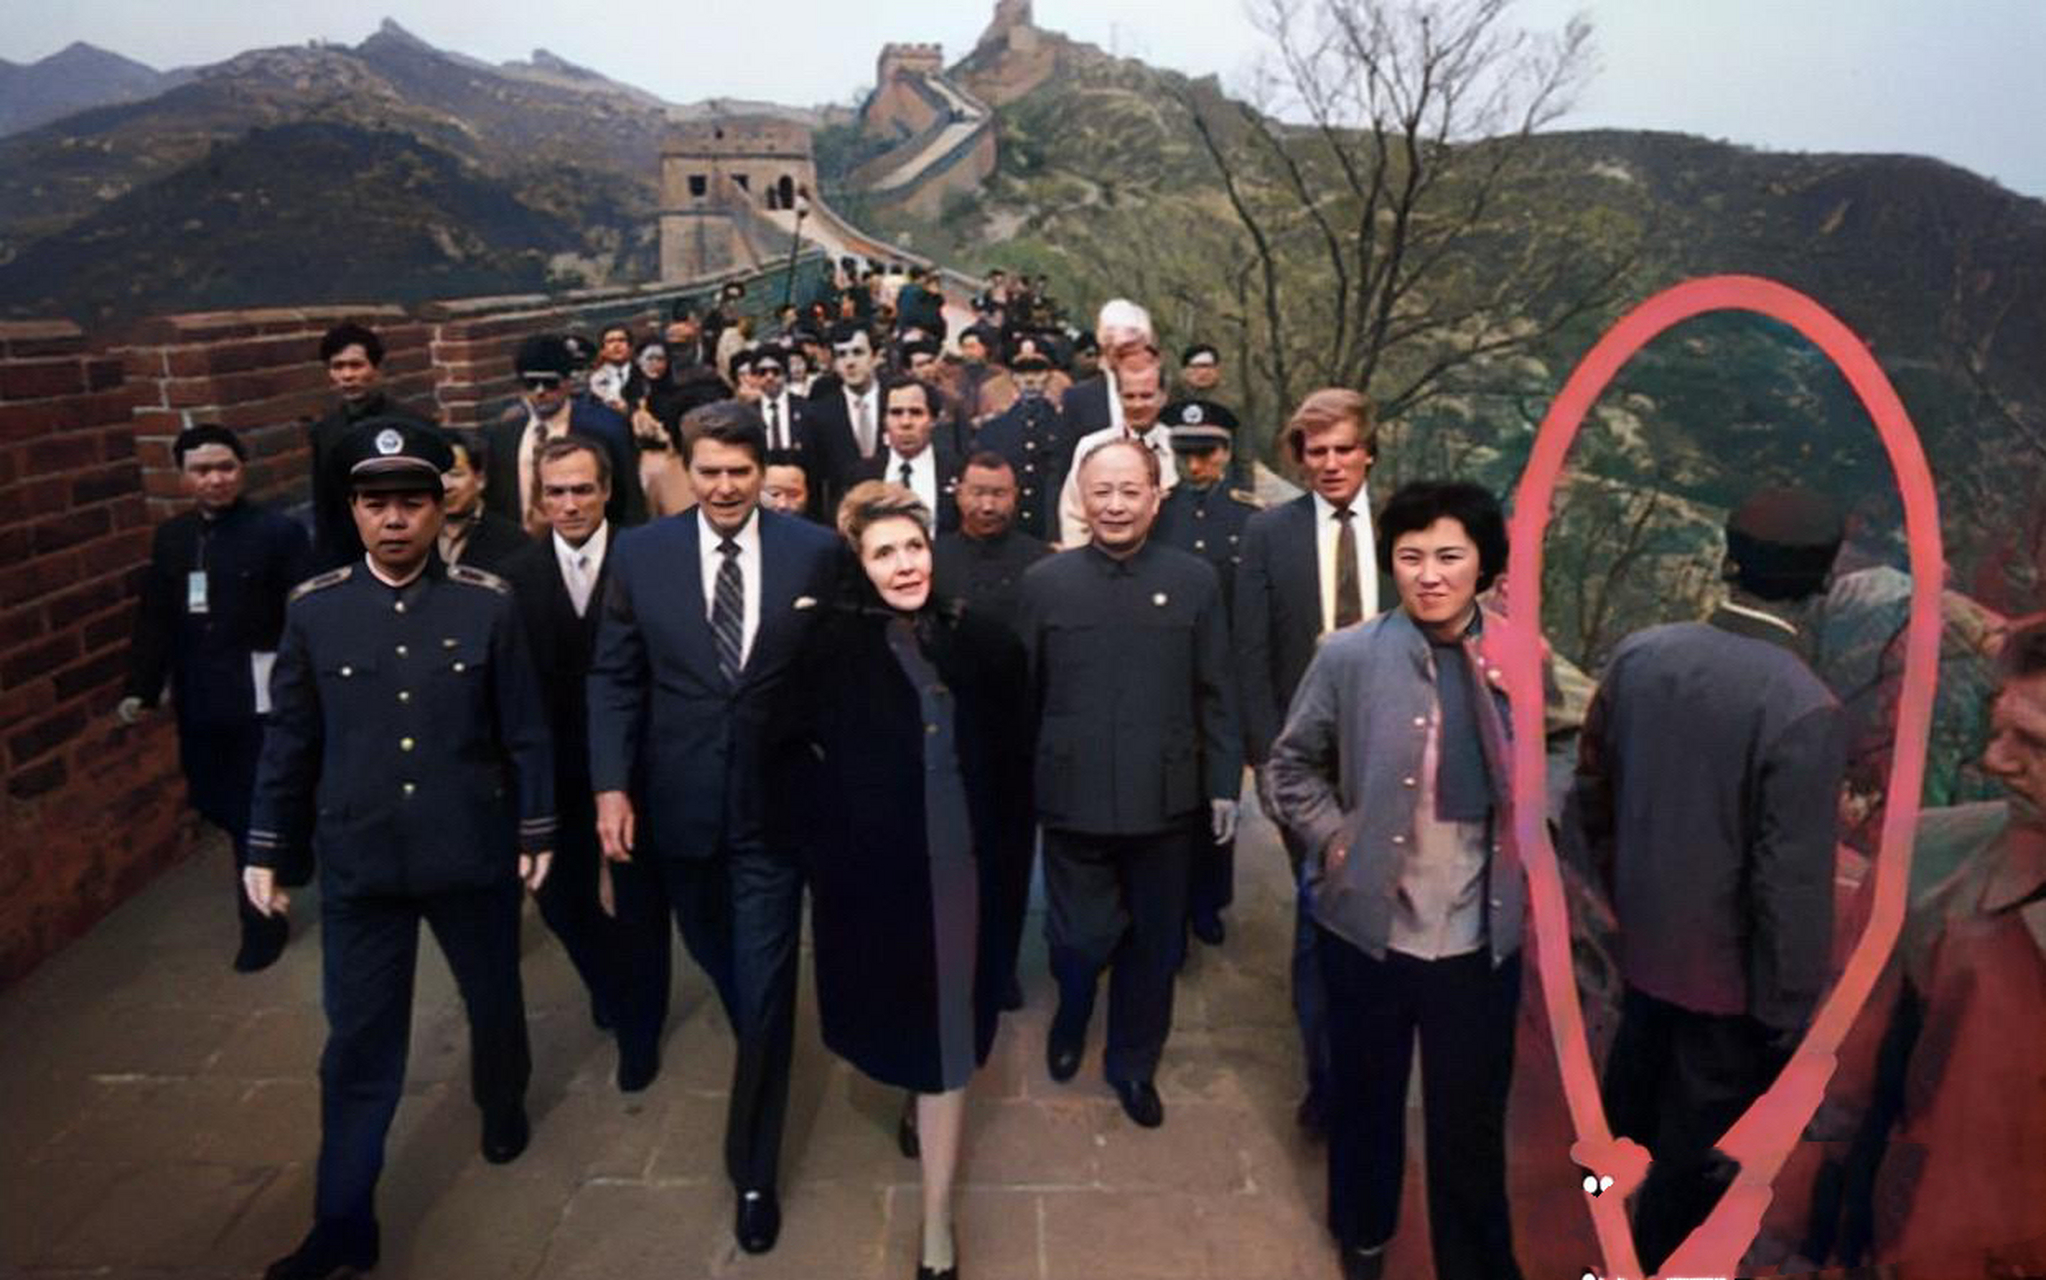 1980年,中美正式建交后不久,美国总统里根和夫人来到中国参观八达岭